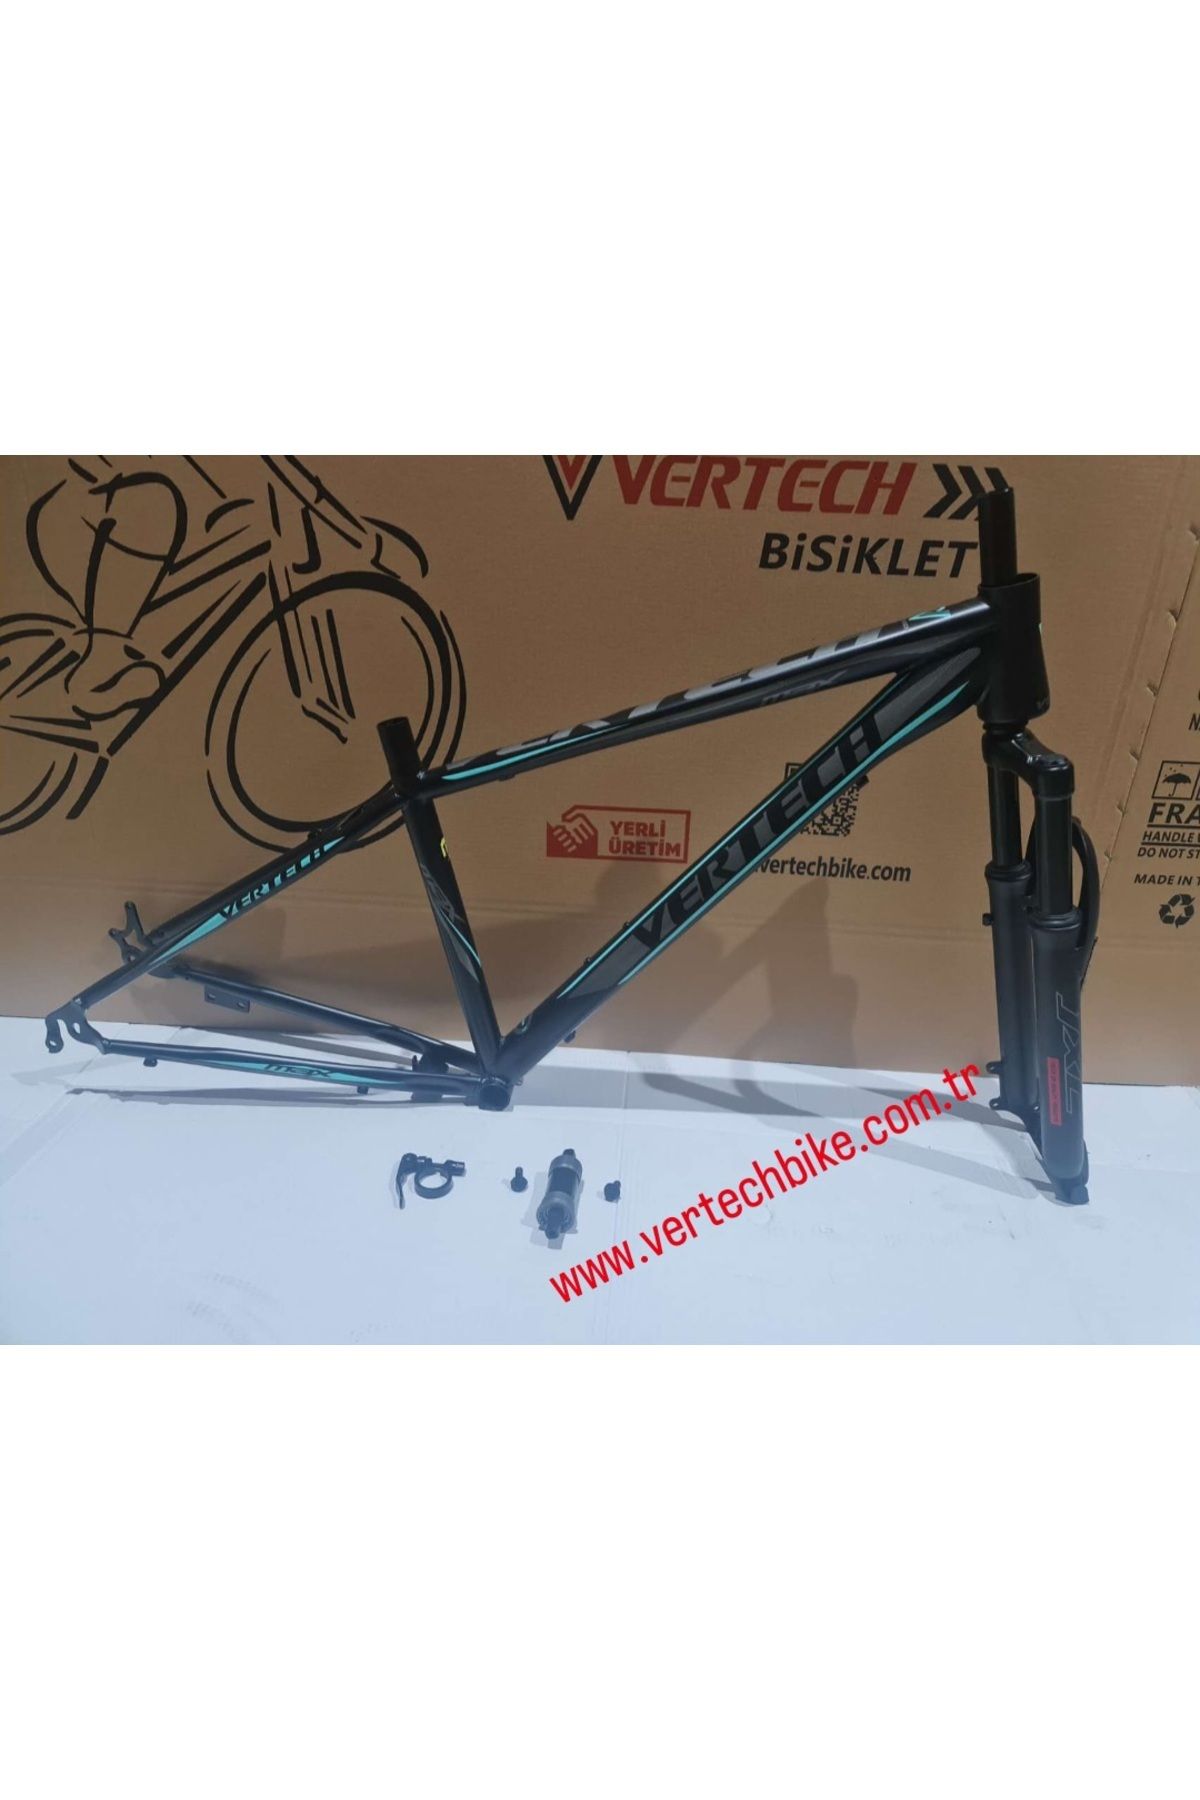 Vertech Bisiklet-kadro-27.5max-445mm-siyah/turkuaz